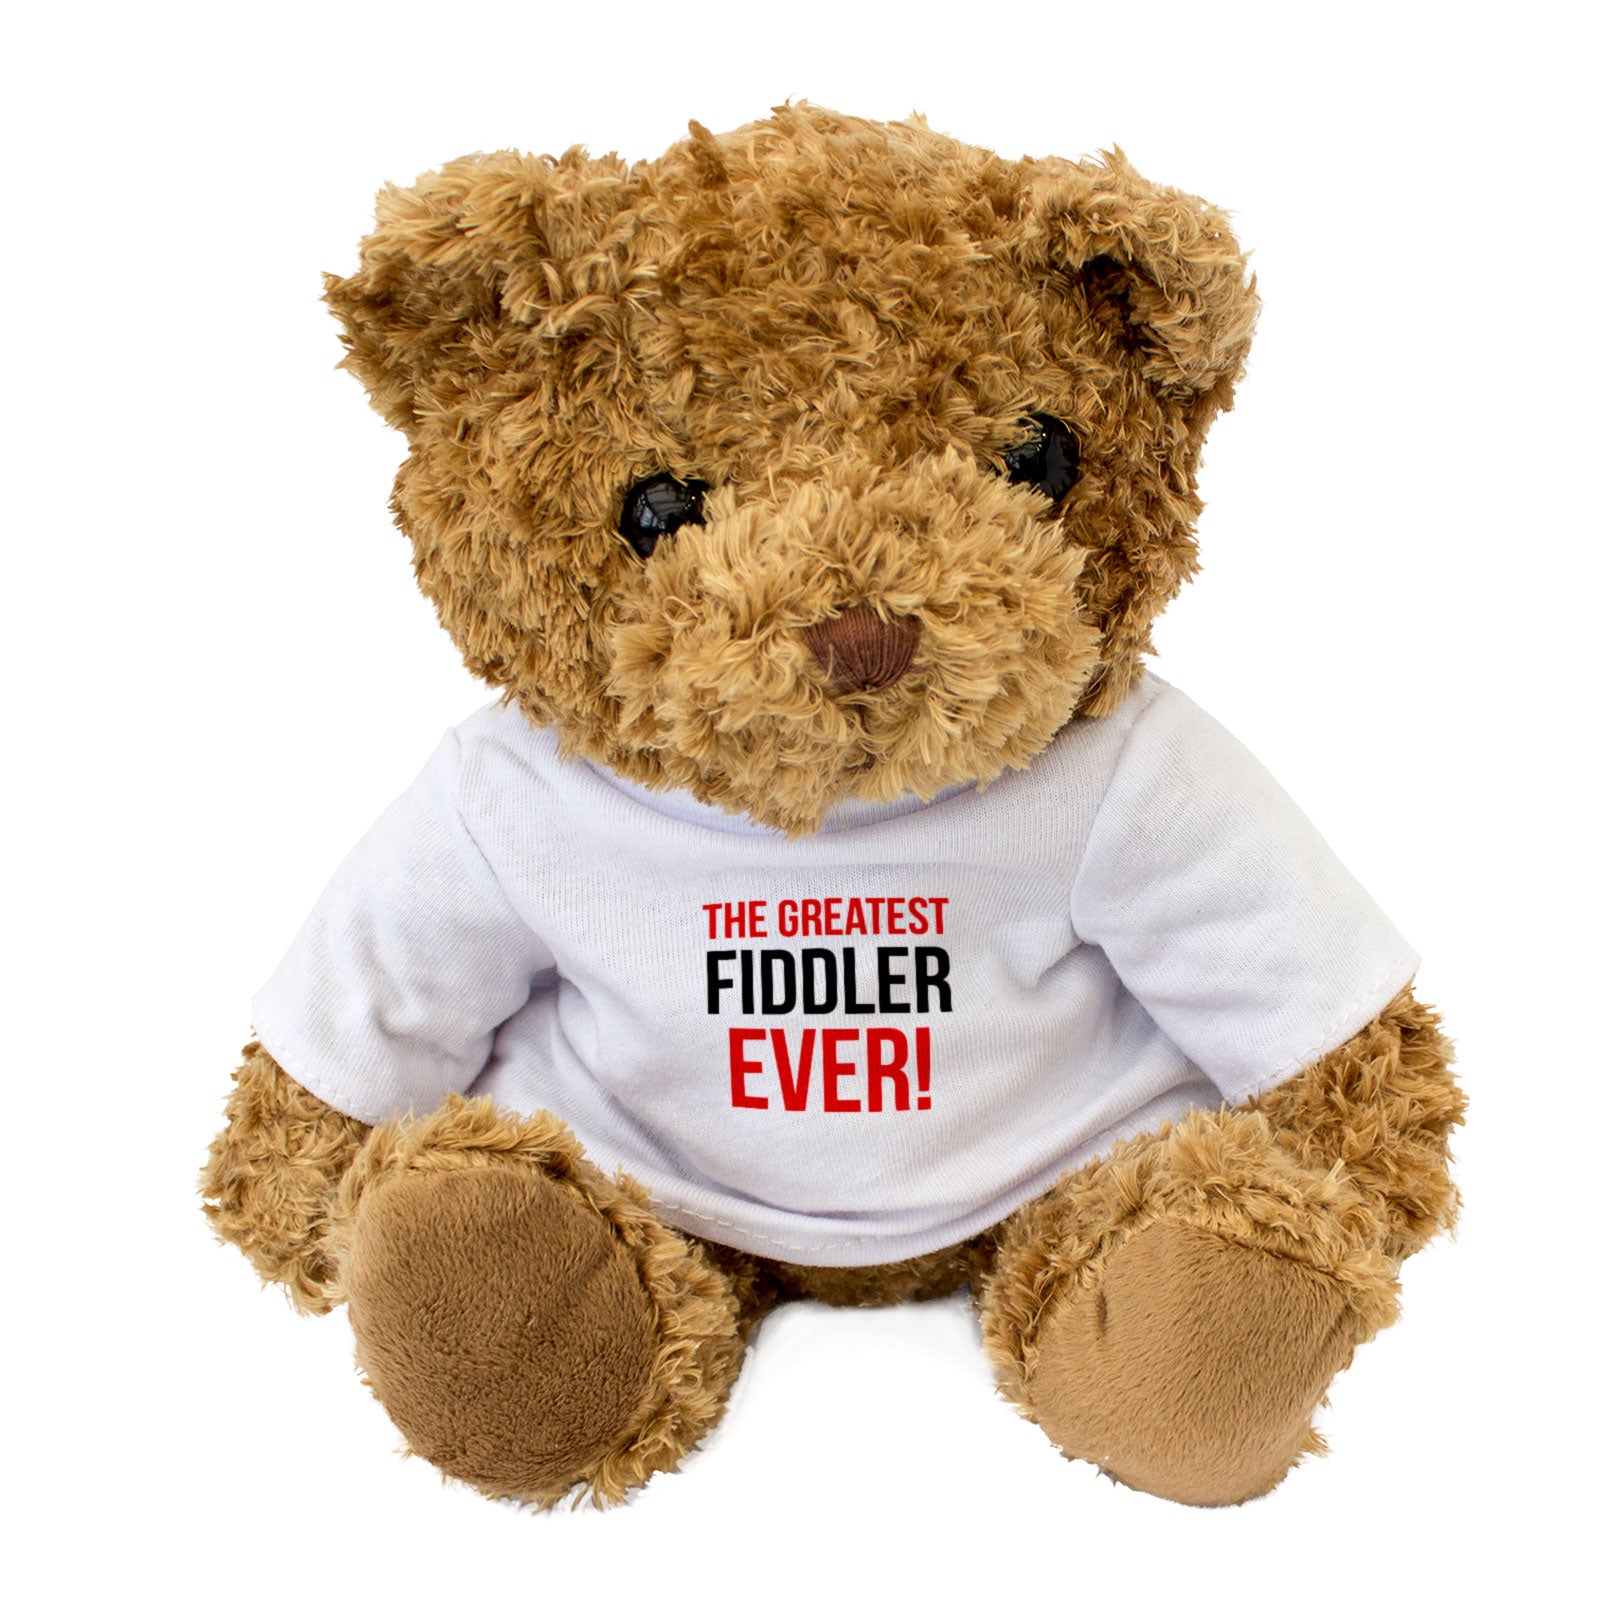 The Greatest Fiddler Ever - Teddy Bear